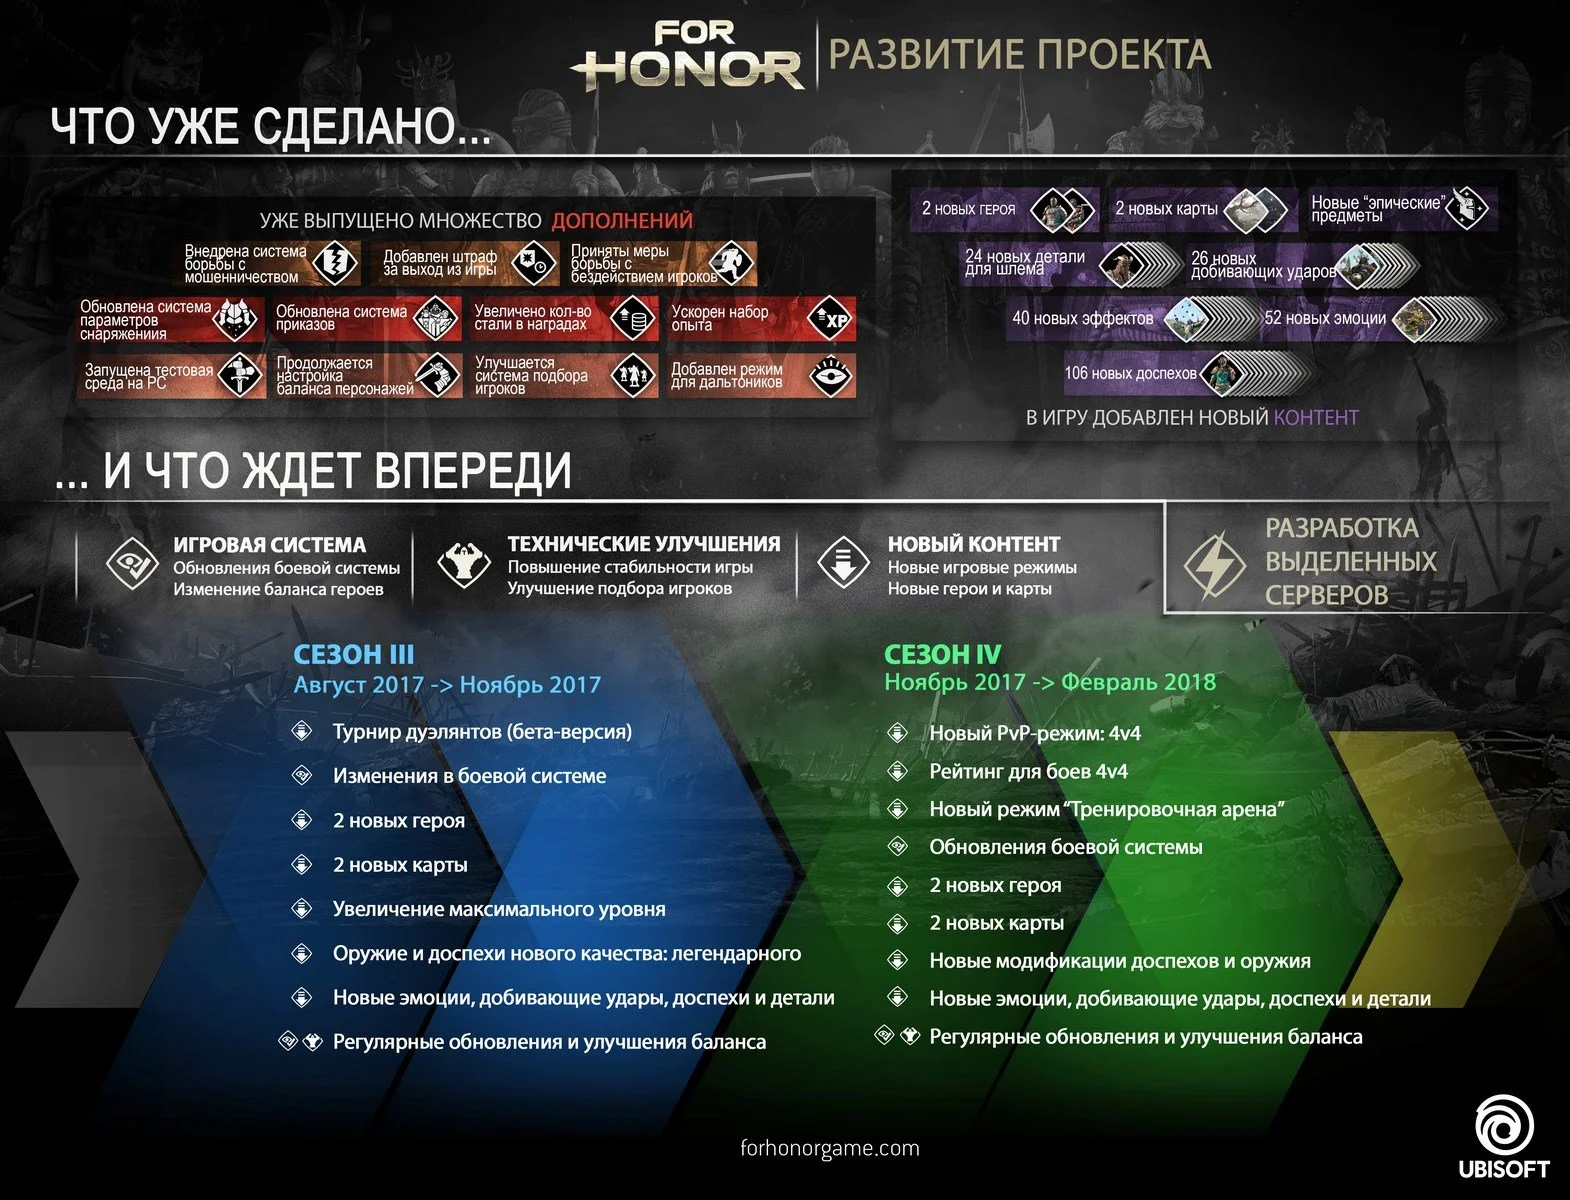 For Honor наконец получит выделенные сервера. А вы еще в нее играете? - фото 1